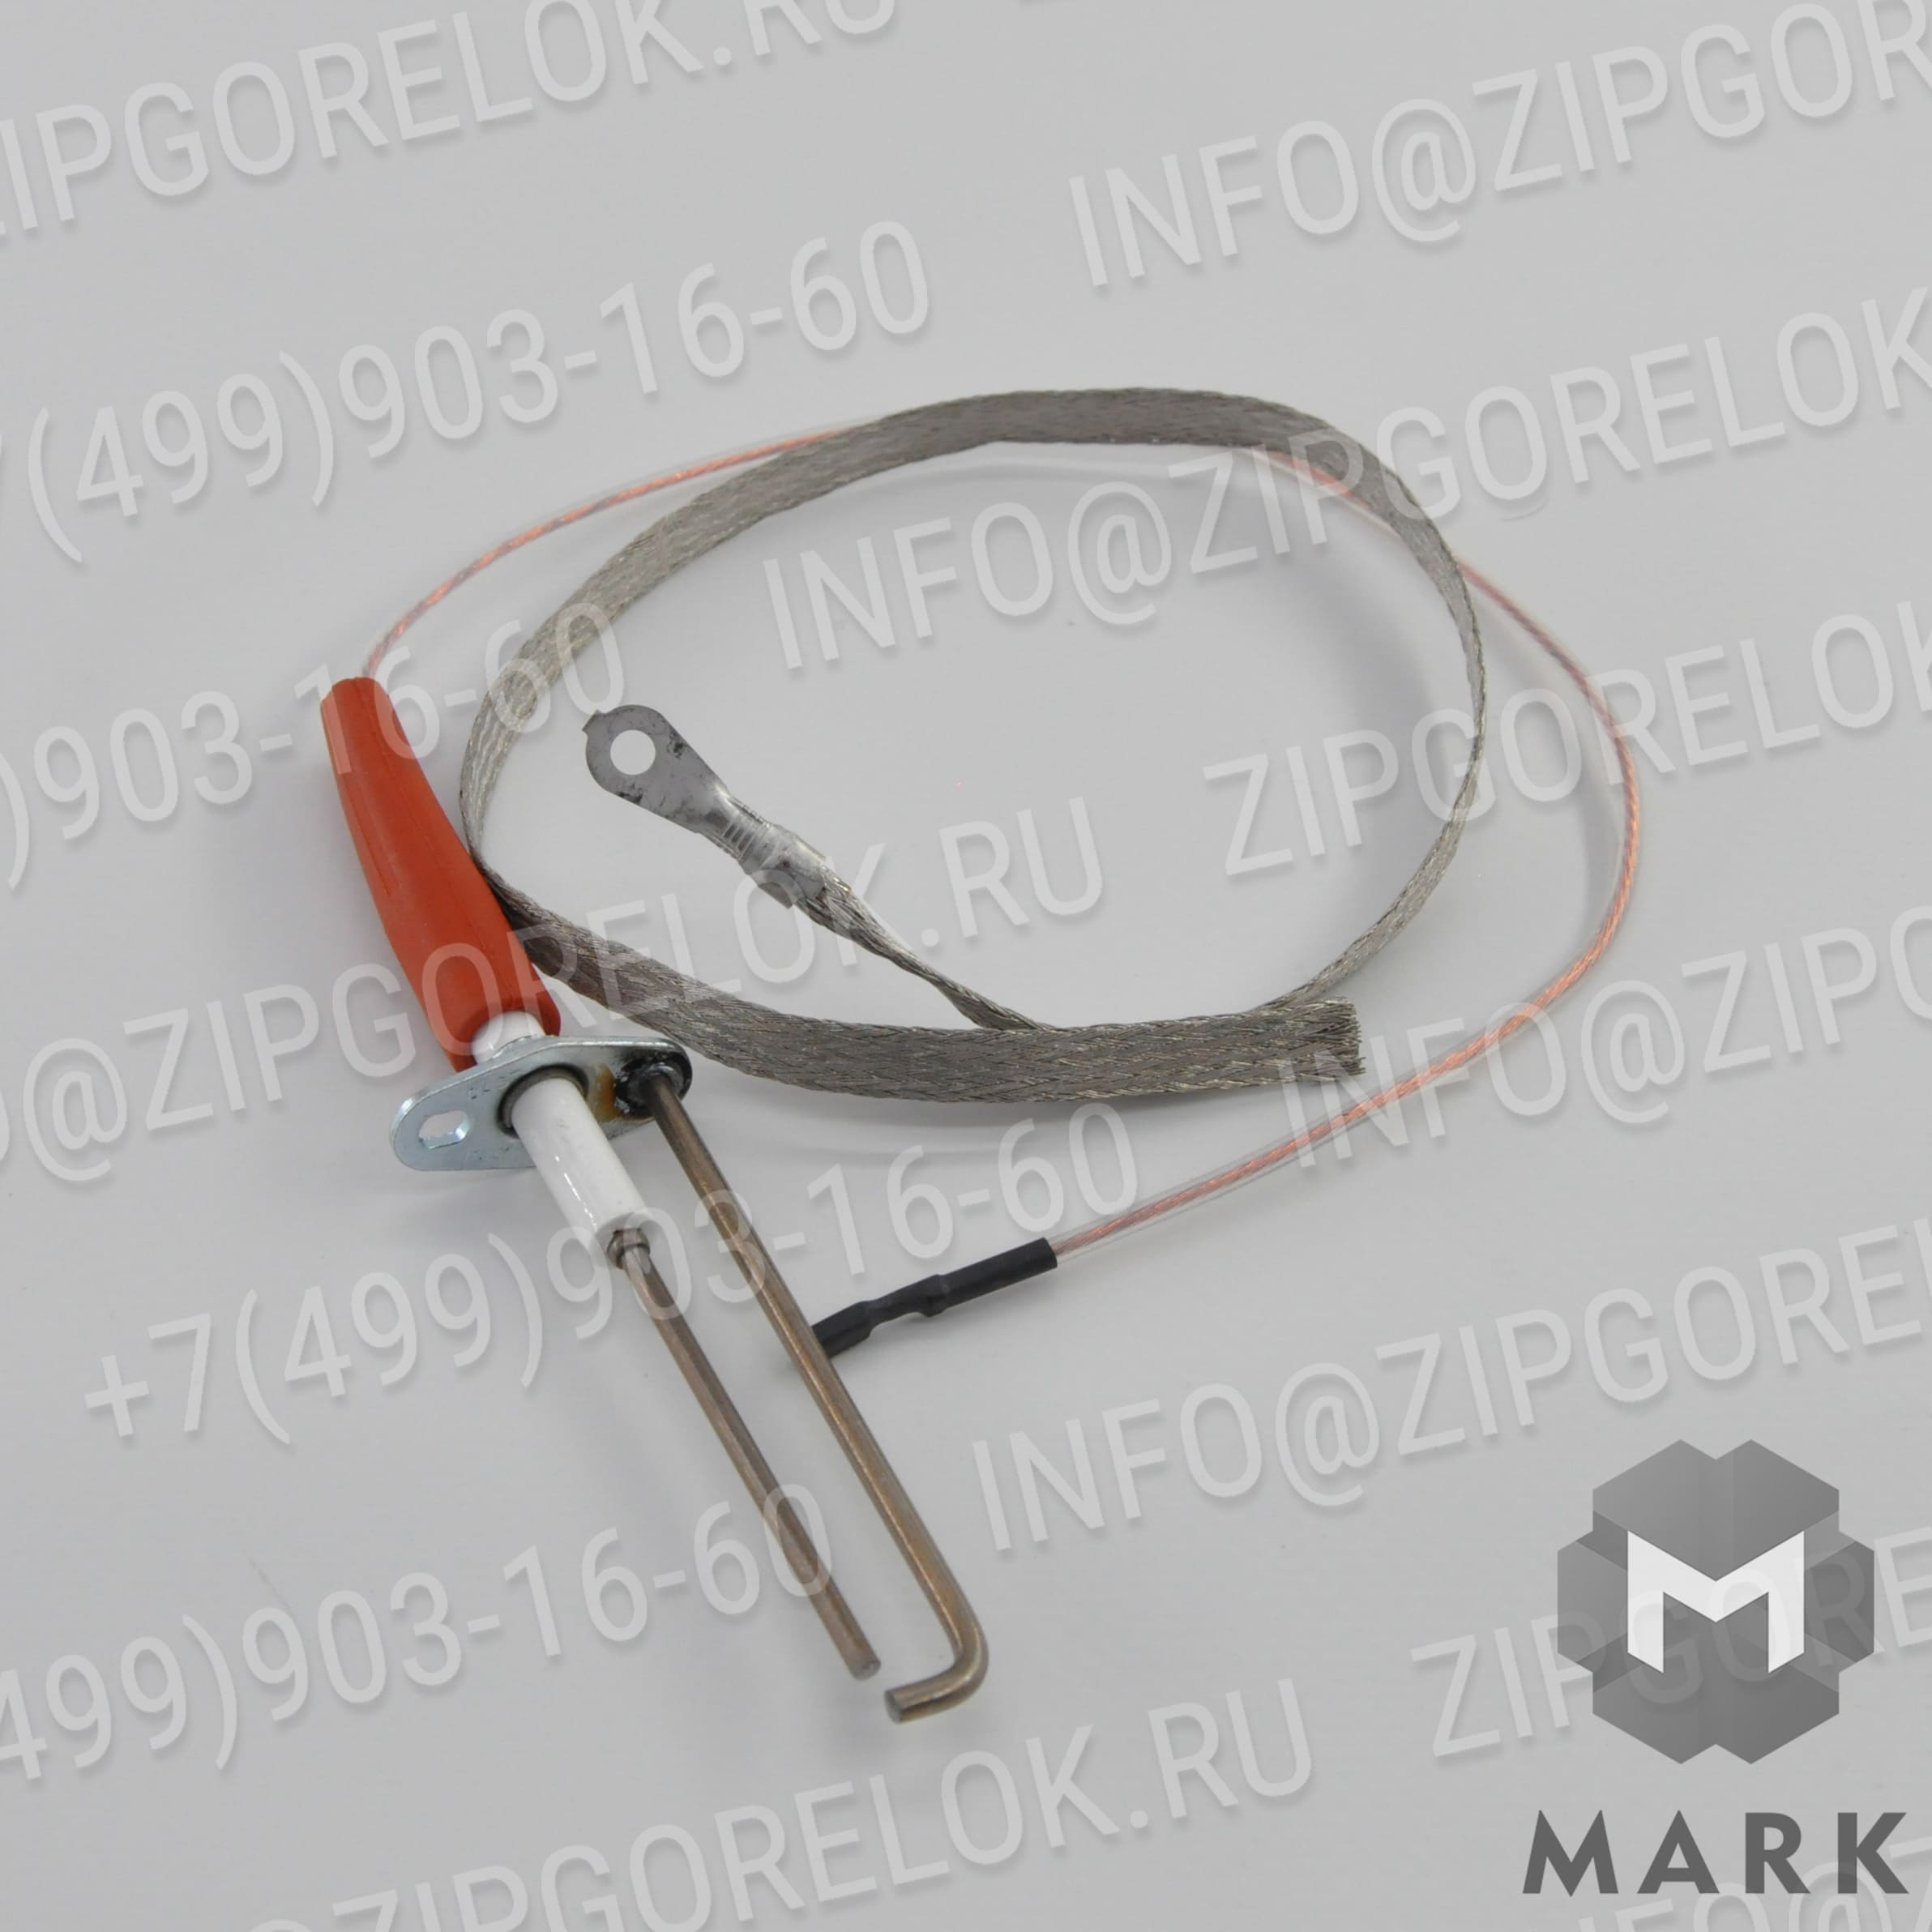 R103307 Купить электрод розжига BERETTA R103307 - в zipgorelok.ru